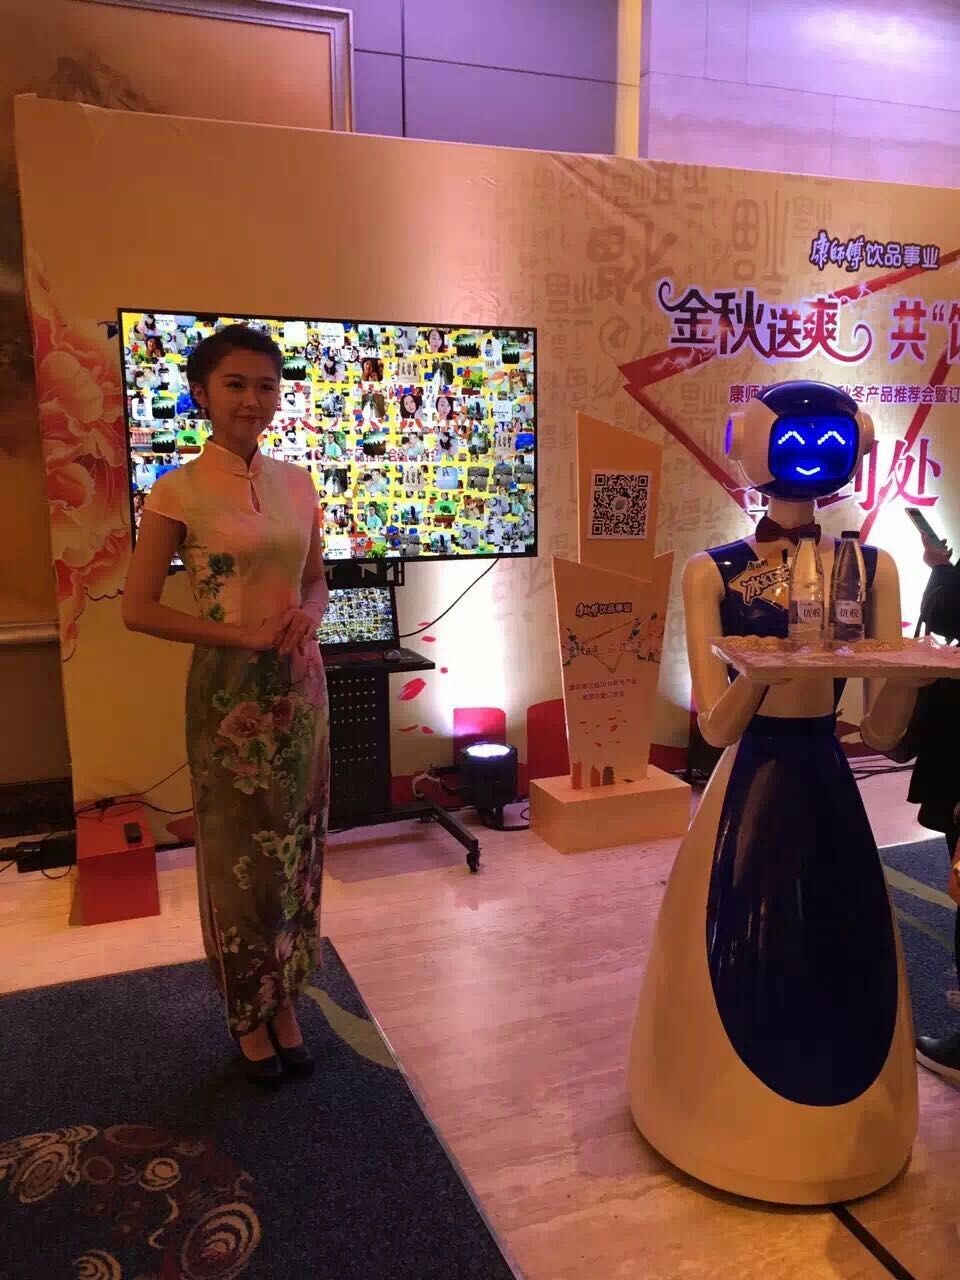 广州卡伊瓦机器人免费招商加盟代理广州卡伊瓦机器人免费招商加盟代理